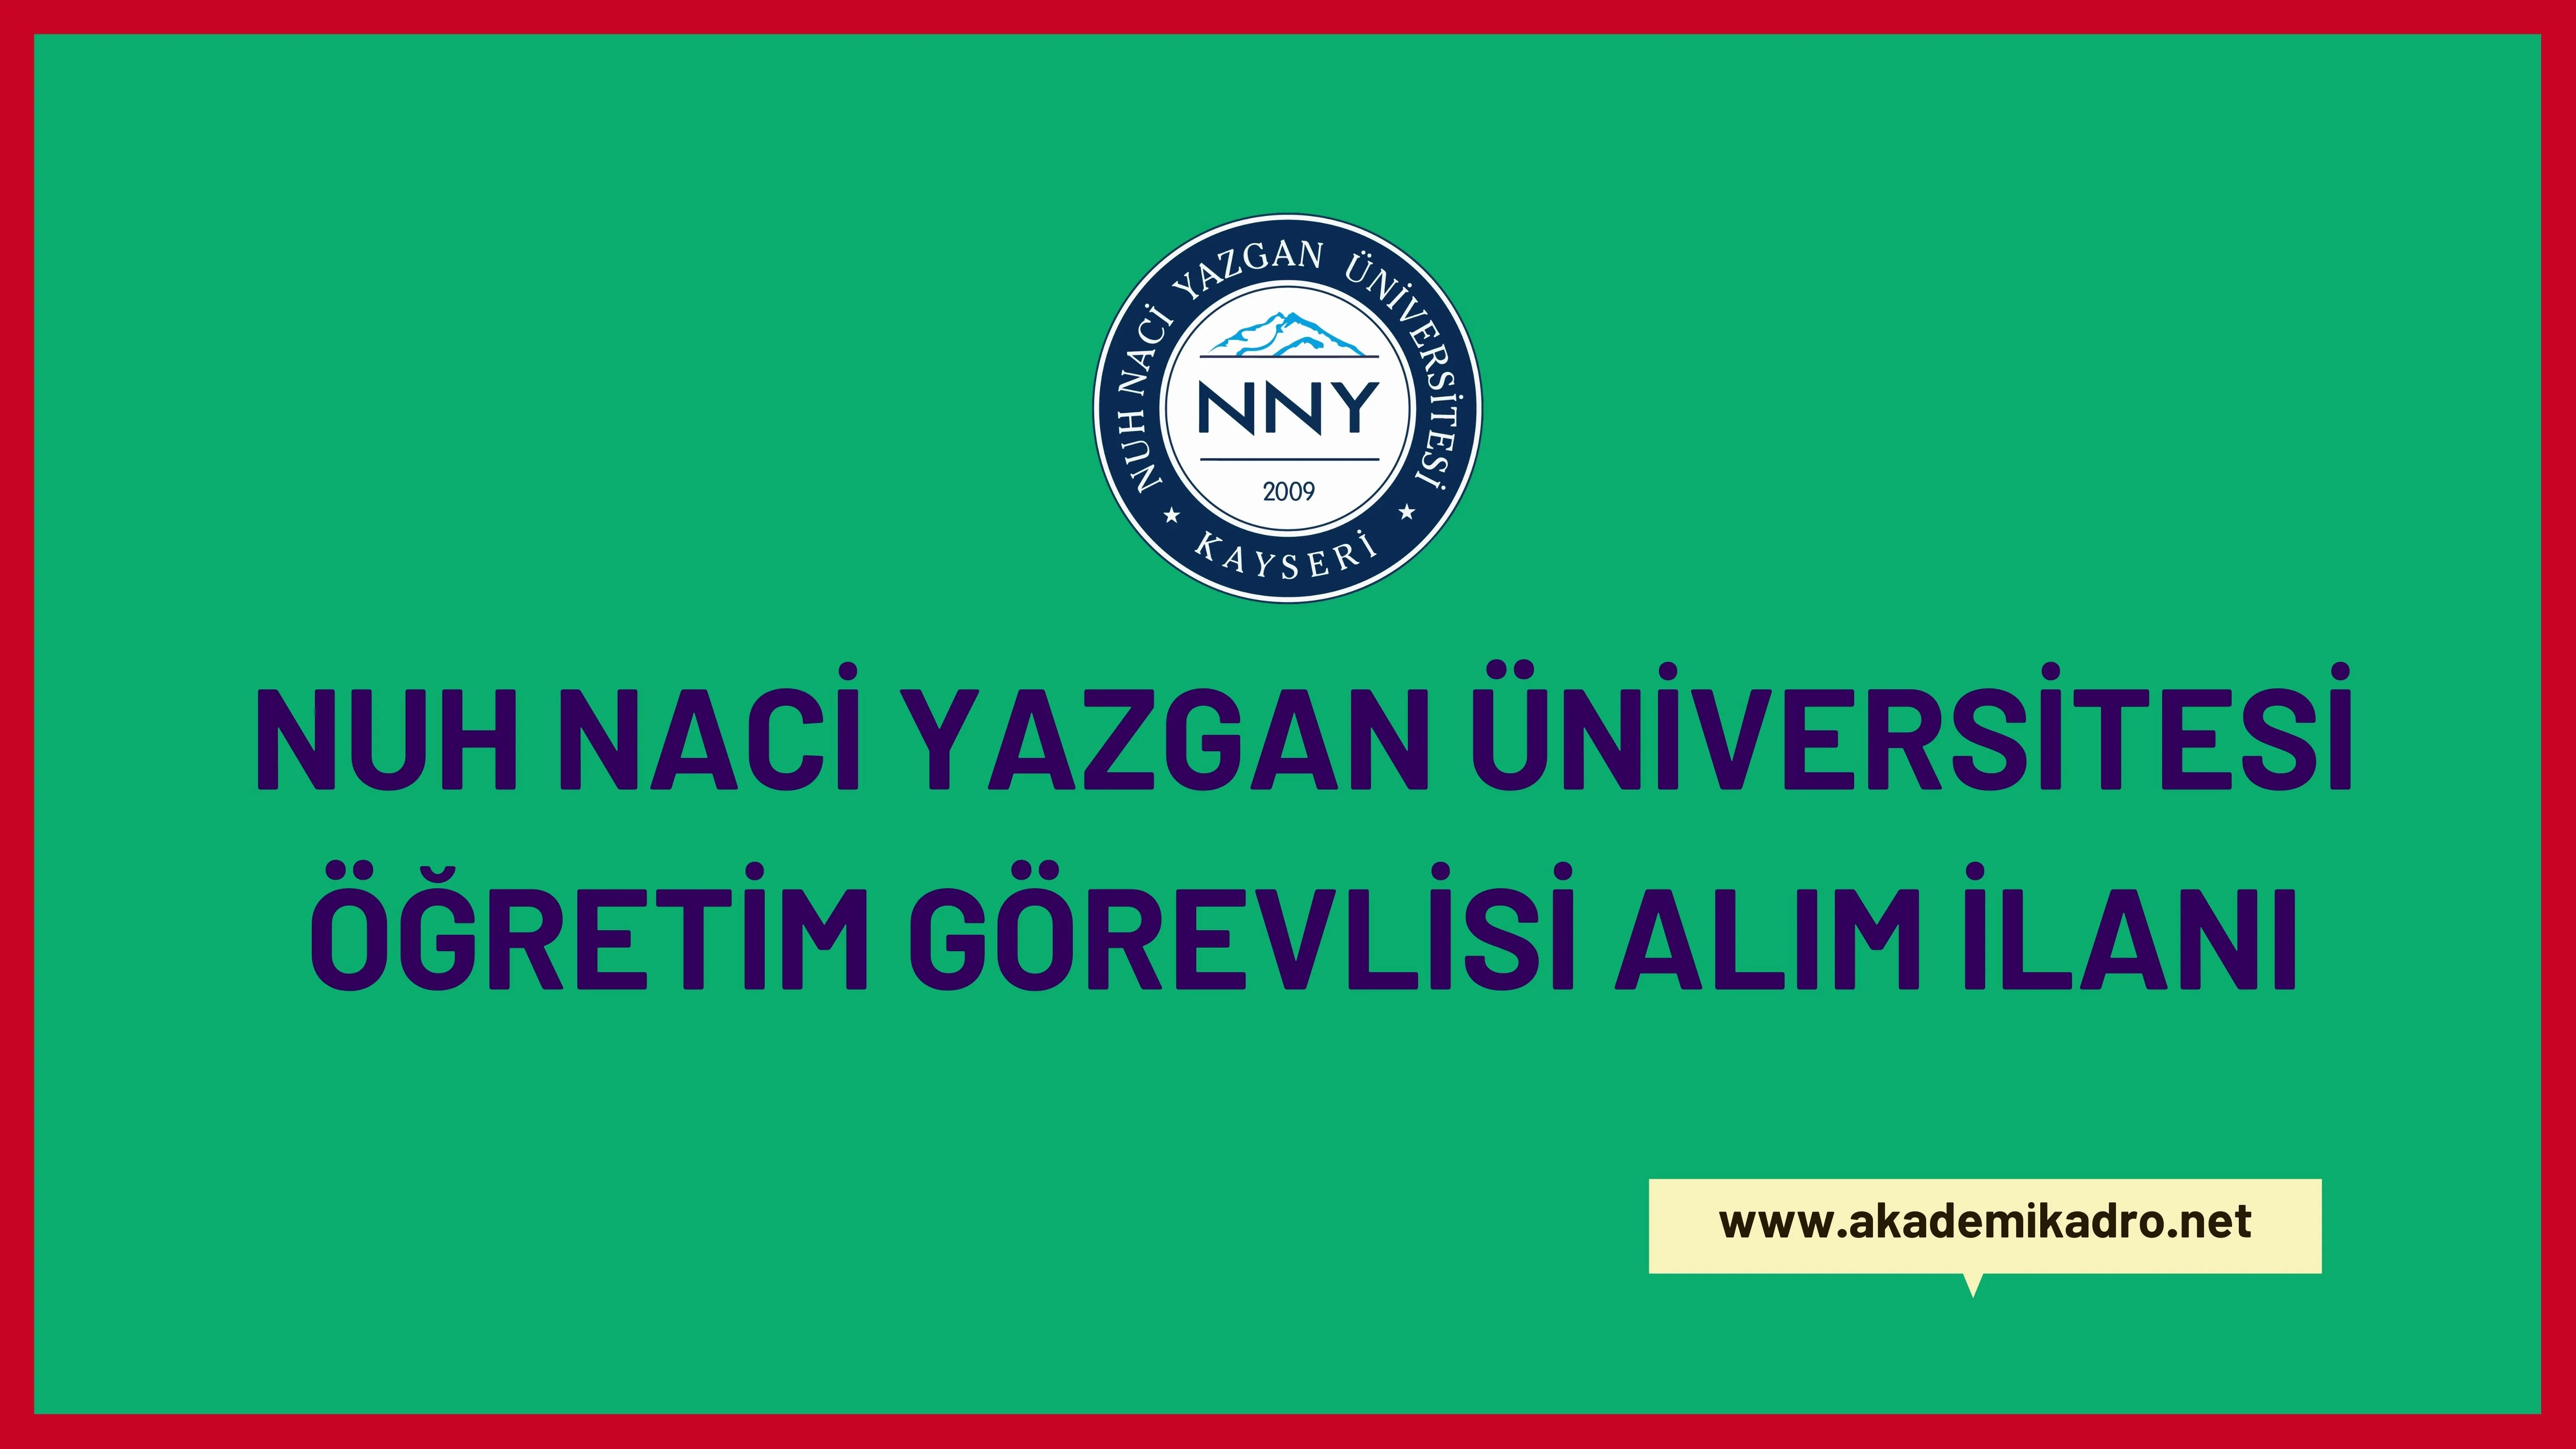 Nuh Naci Yazgan Üniversitesi 3 Öğretim Görevlisi alacaktır. Son başvuru tarihi 24 Kasım 2022